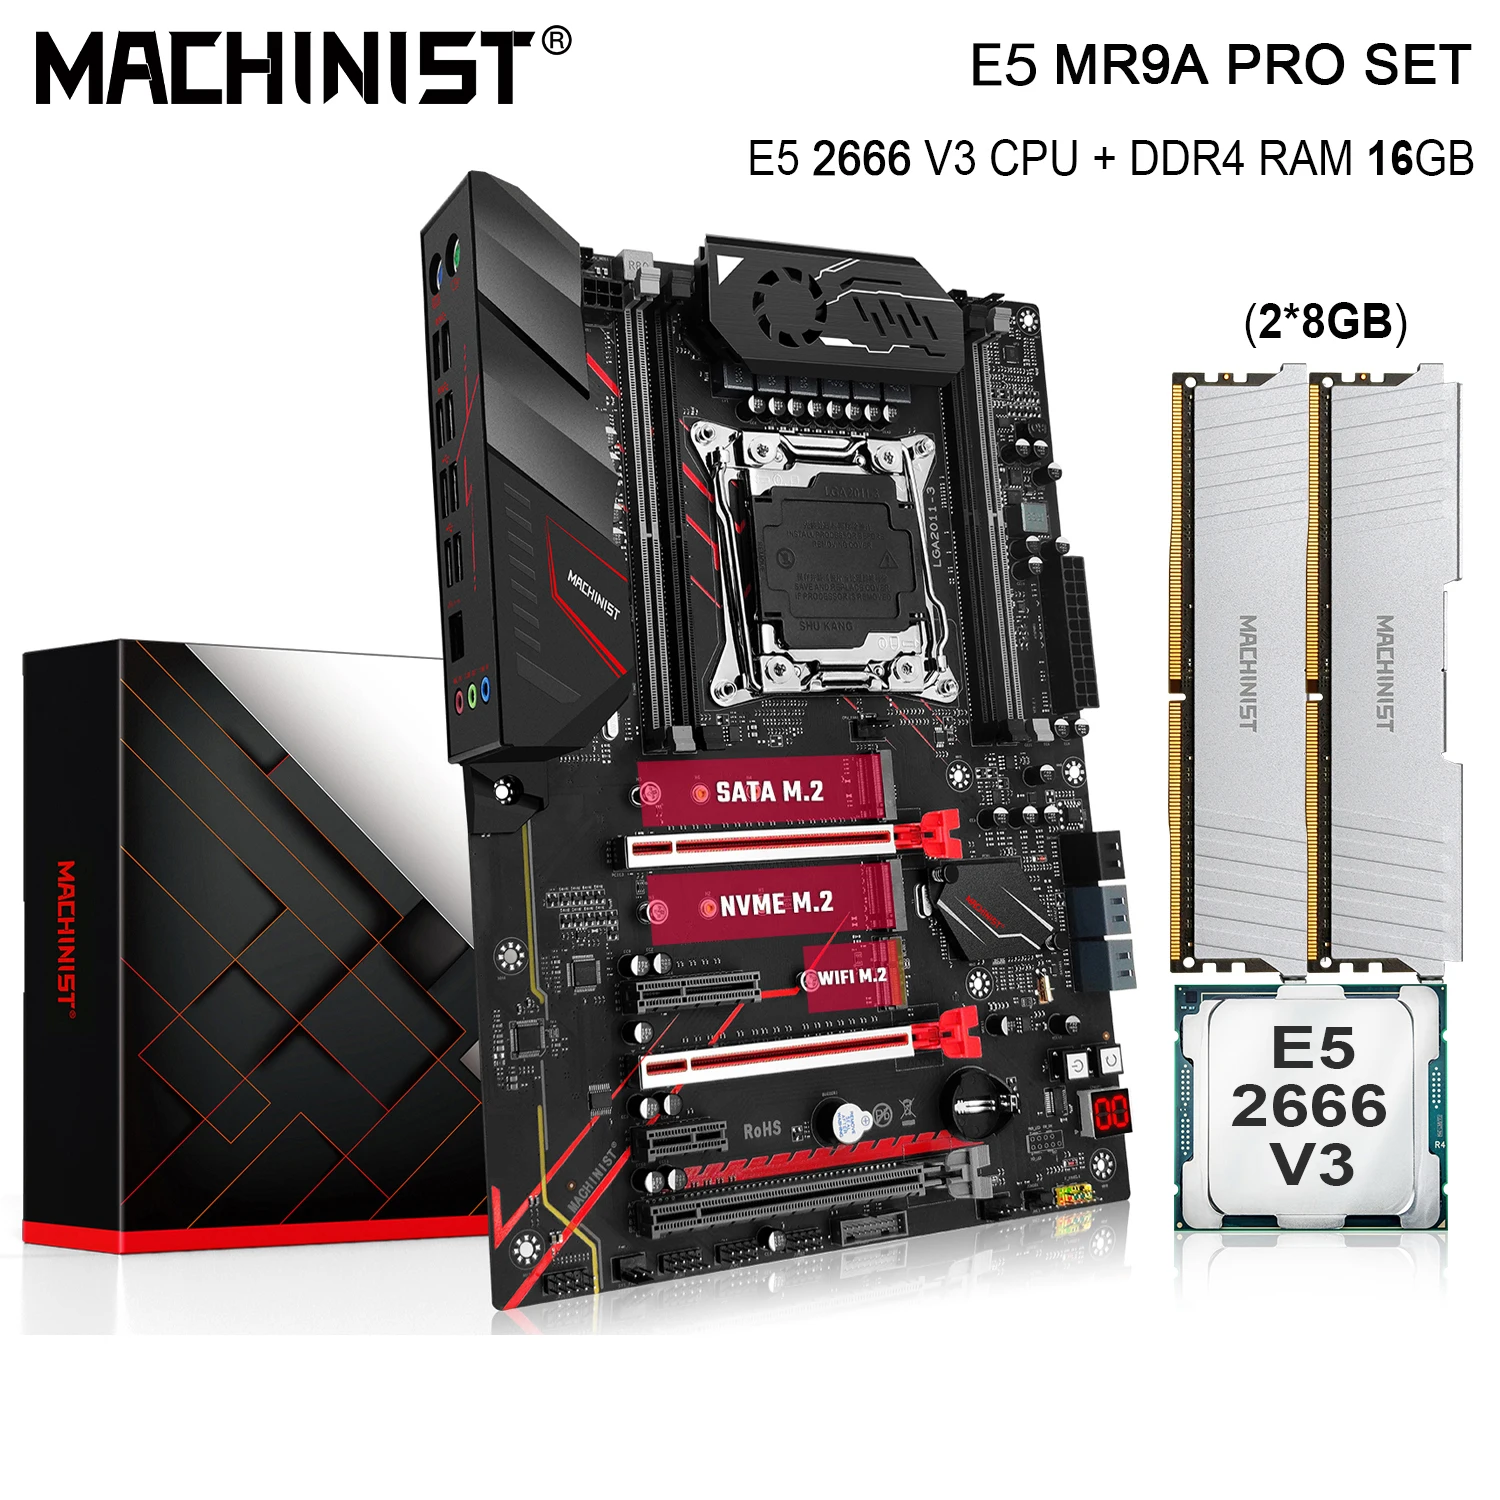 MAȘINIST X99 Kit Placa de baza Cu E5 2666 V3 Procesor CPU LGA 2011-3 16G(2*8) DDR4 Memorie RAM M. 2 NVME SATA M. 2 MR9A PRO MAX 0